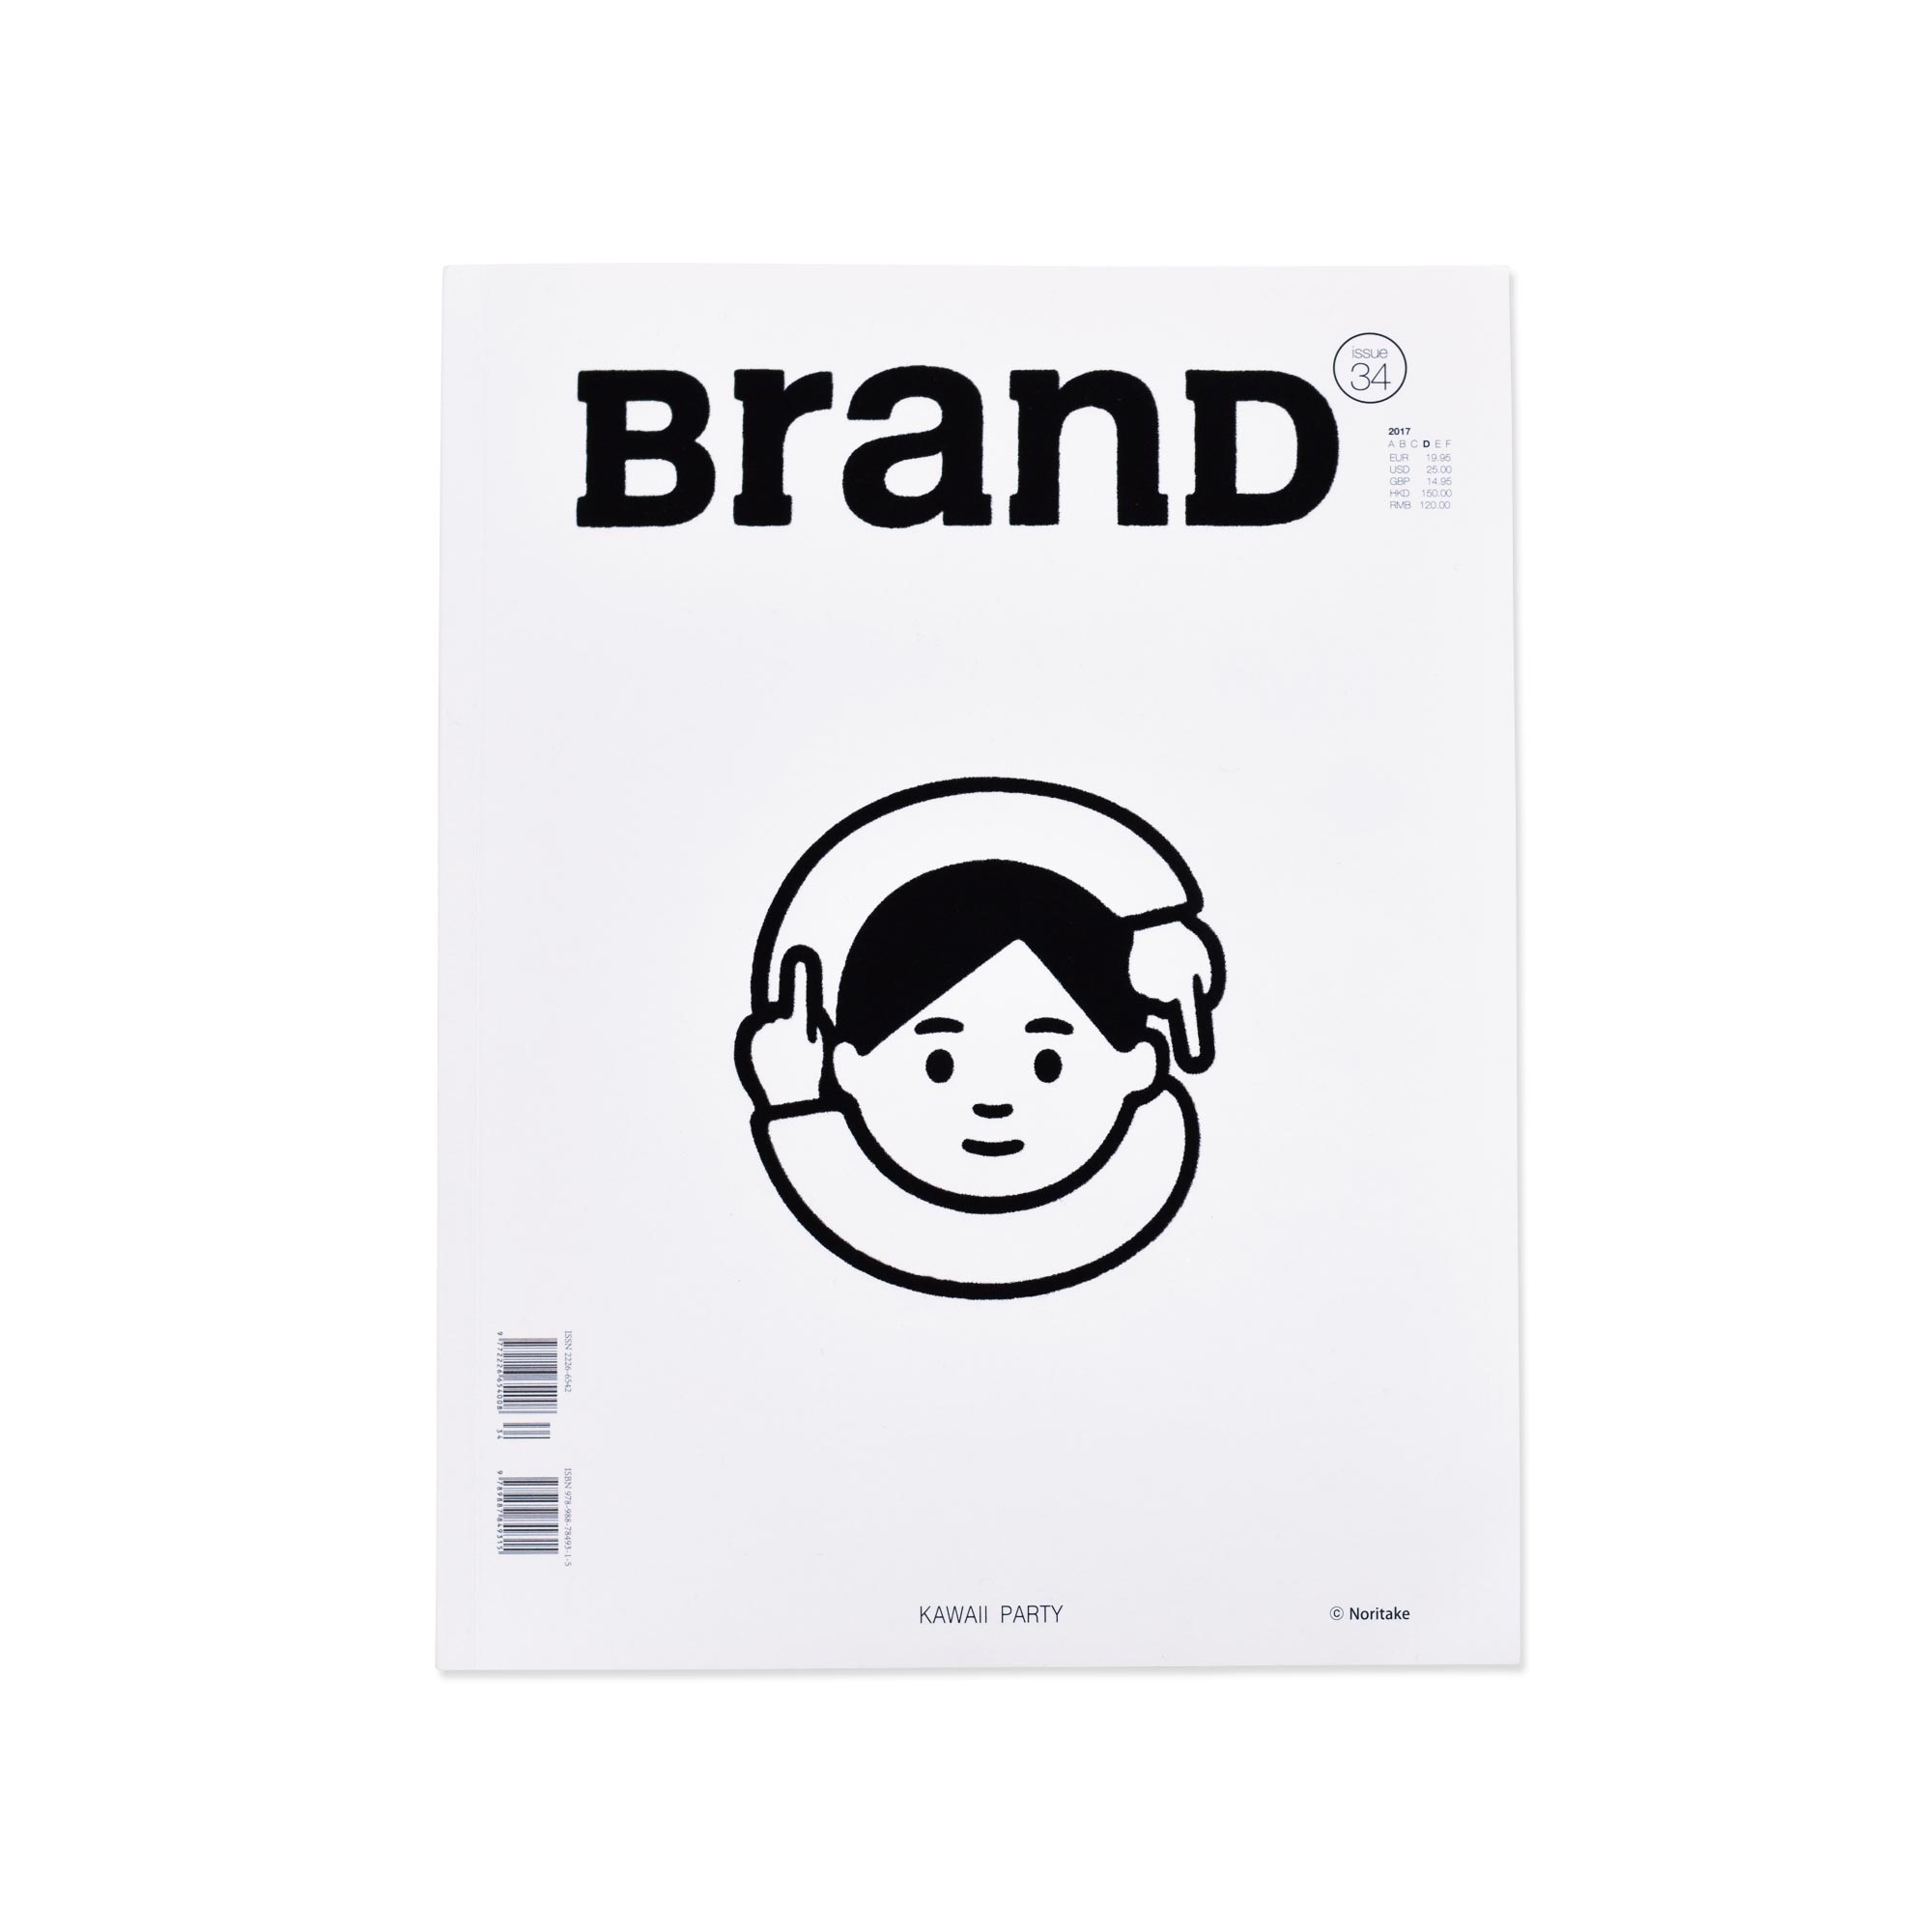 BranD magazine issue34